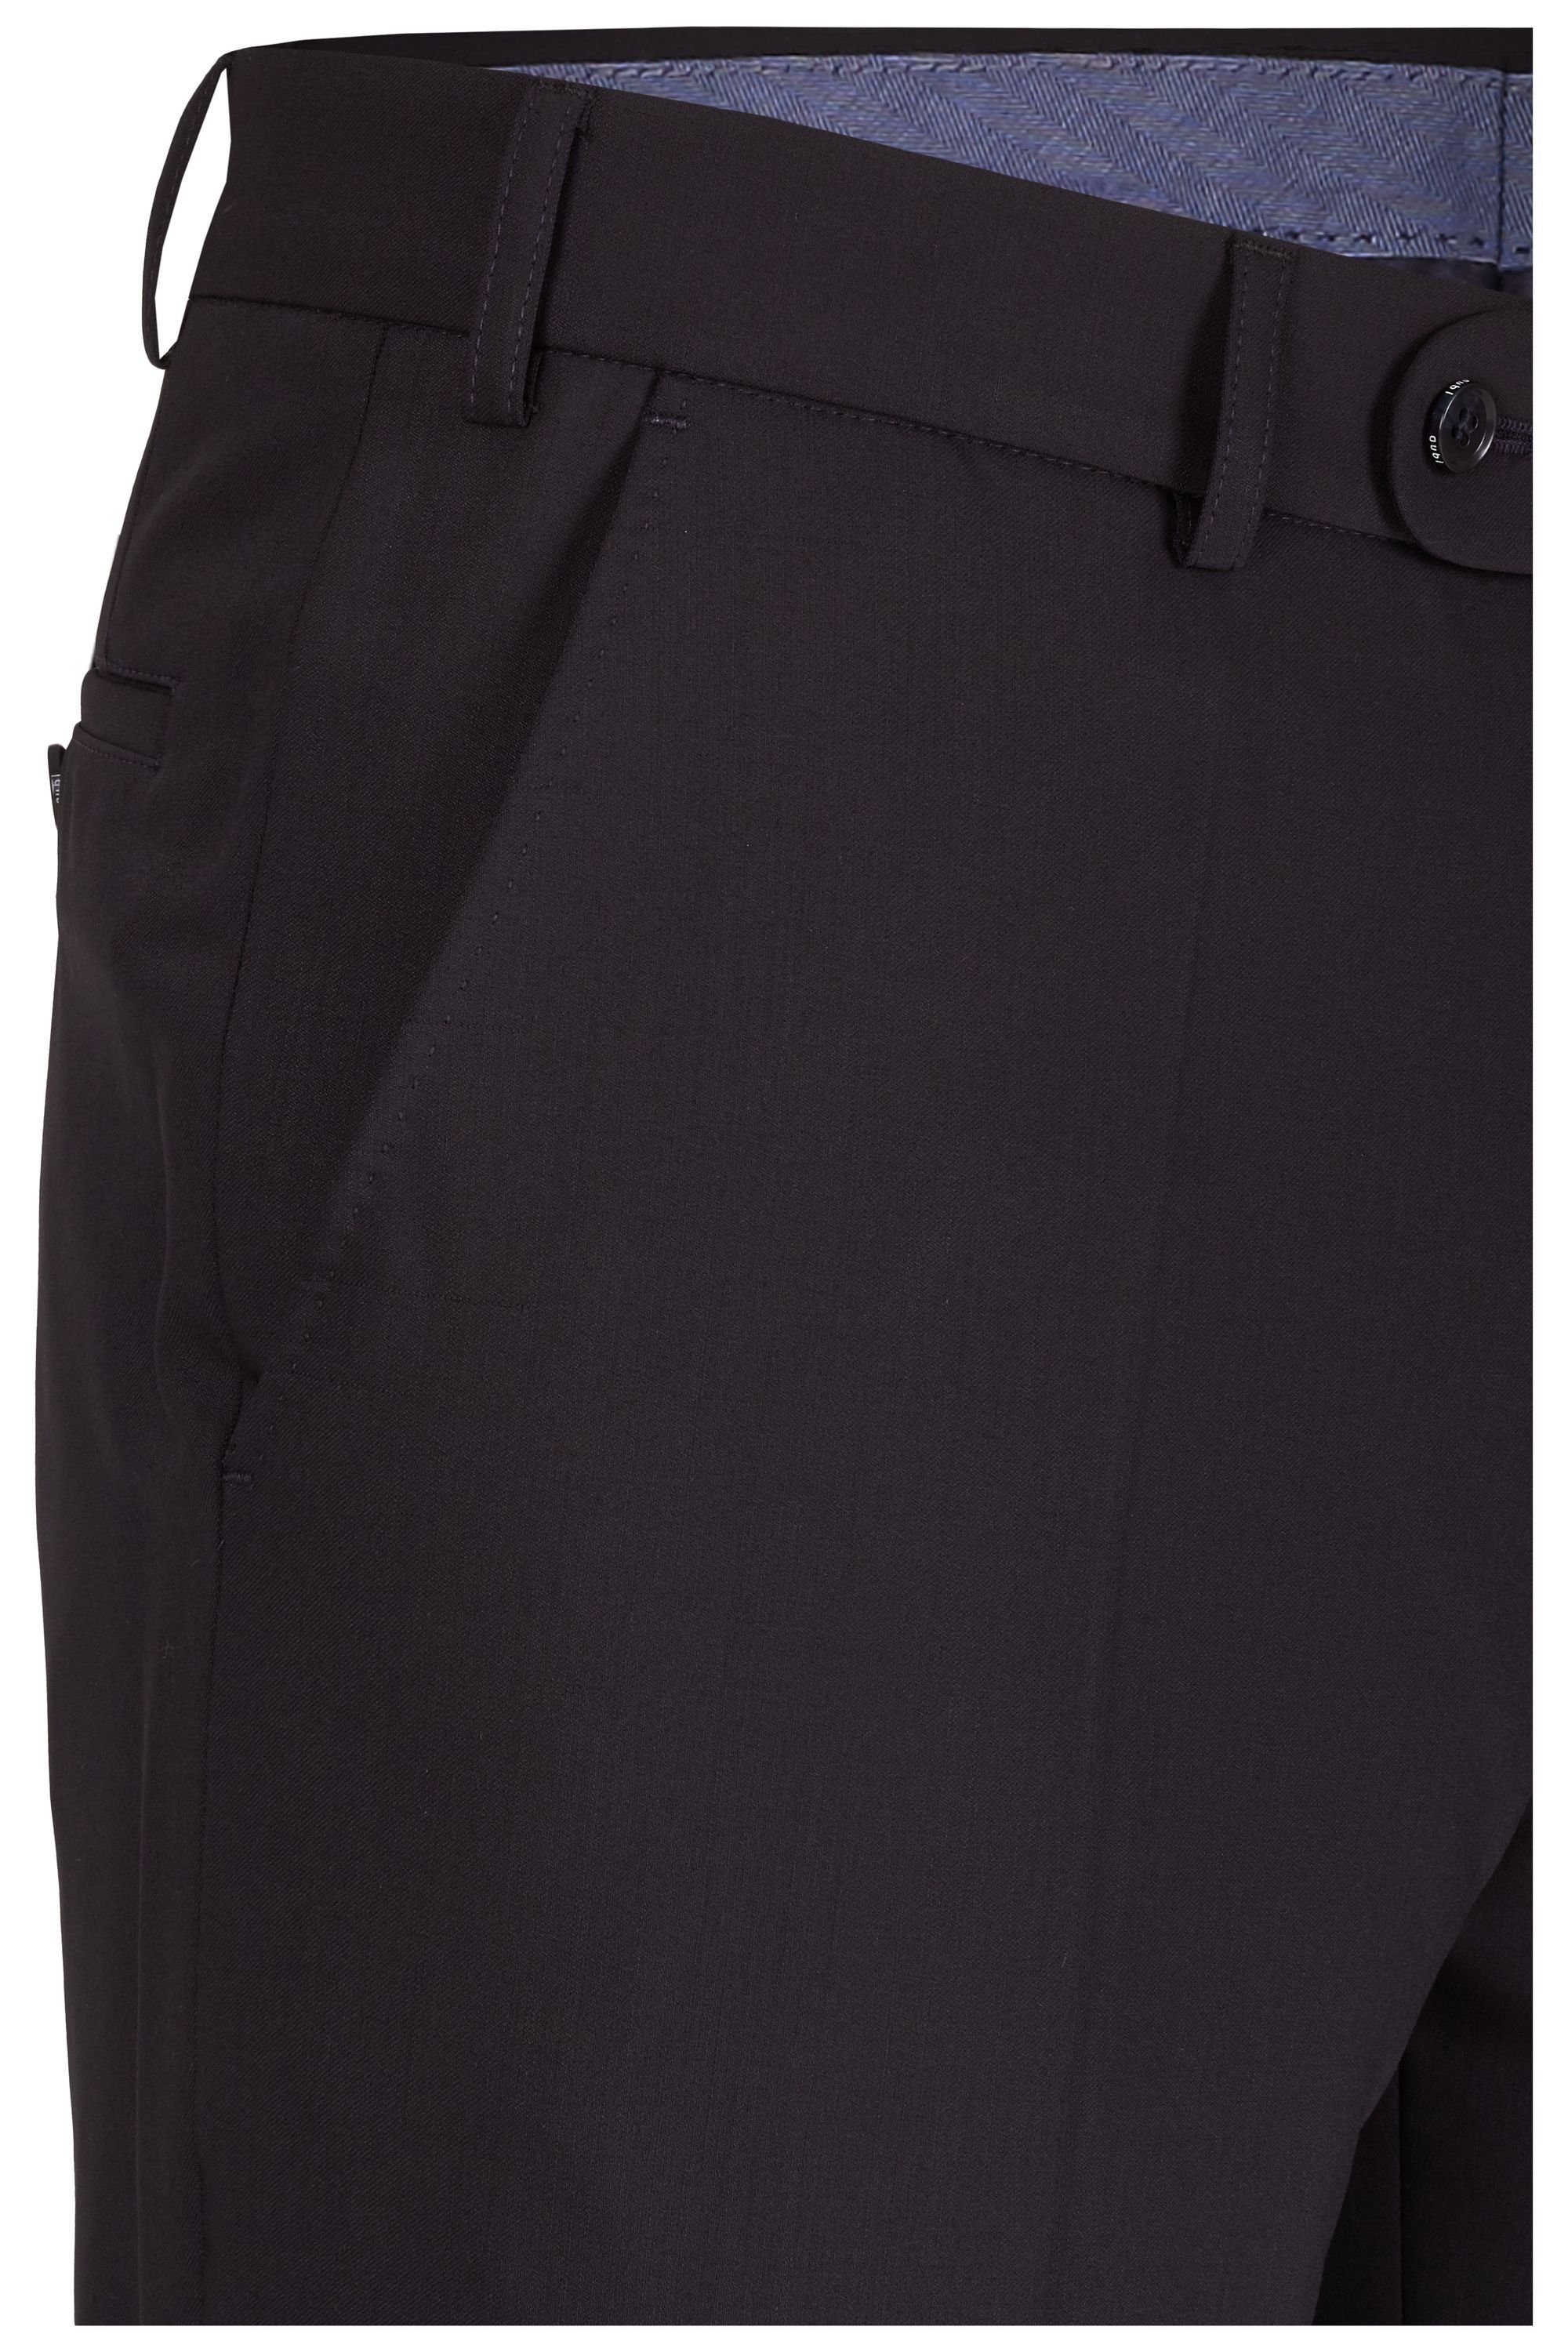 aubi: Stoffhose aubi Modern Fit Modell Anzughose Herren Front schwarz Flat Businesshose (50) 188